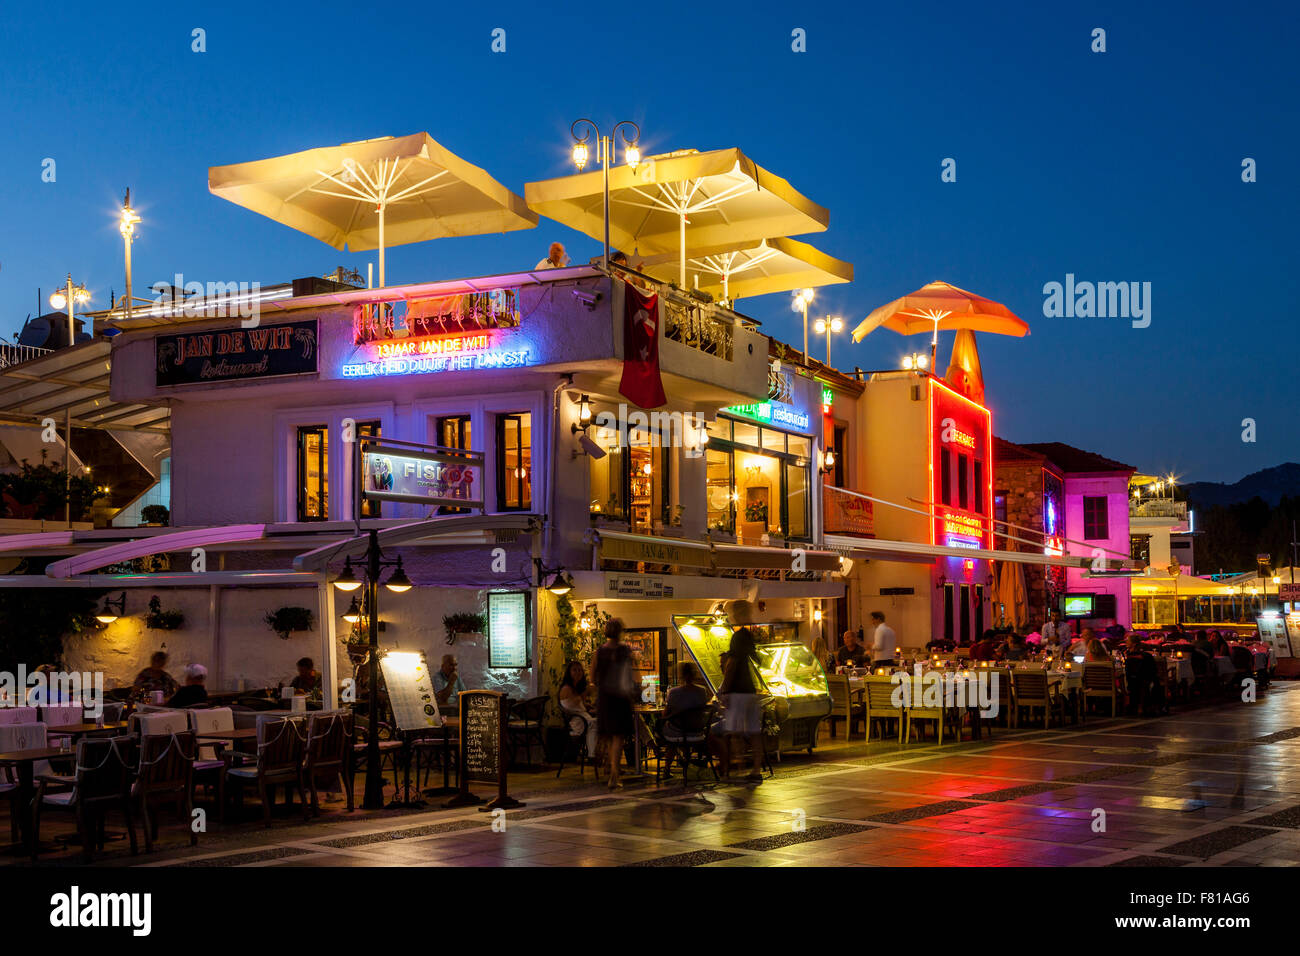 Les touristes à manger cafés et restaurants dans la station balnéaire de Marmaris, Province de Mugla, Turquie Banque D'Images